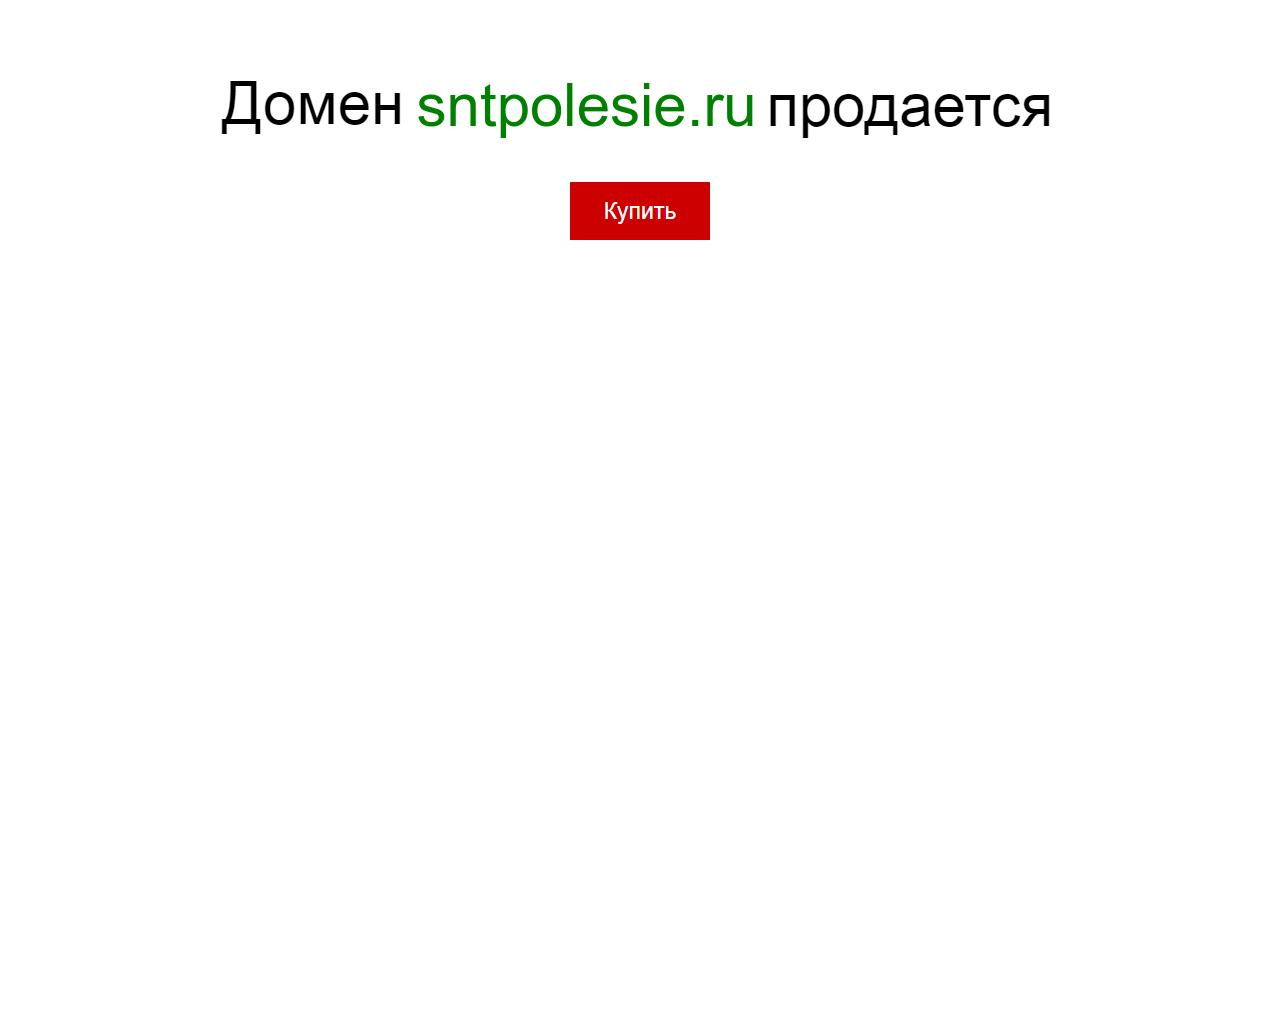 Изображение сайта sntpolesie.ru в разрешении 1280x1024